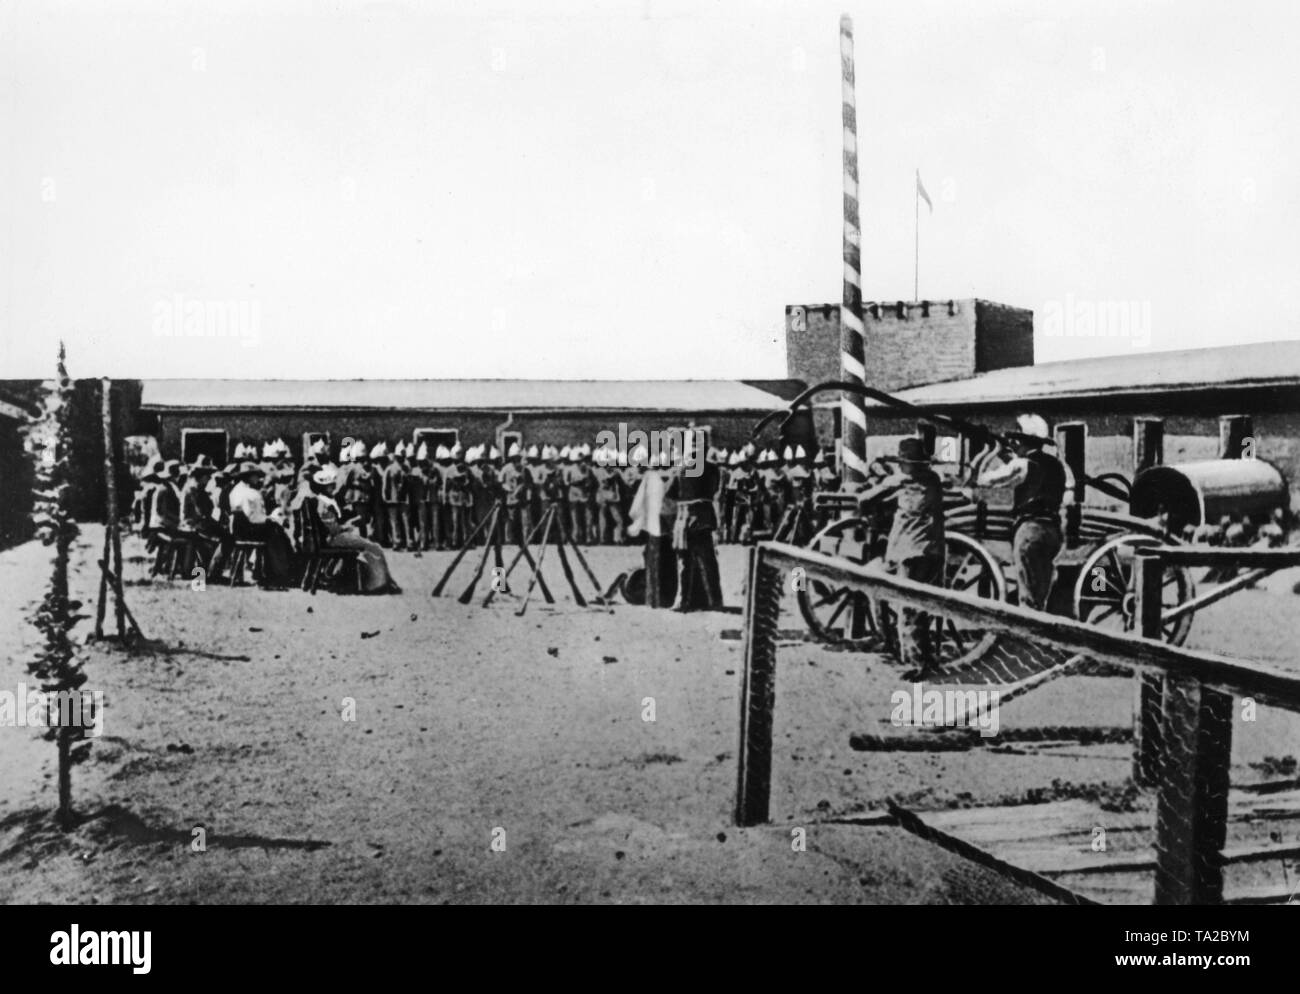 Festliche Service in einer Kaserne in der Nähe von Windhoek, von Curt von Francois, gegründet 1890, auf dem Gebiet der ehemaligen deutschen Kolonie Deutsch-Südwest-Afrika. Stockfoto